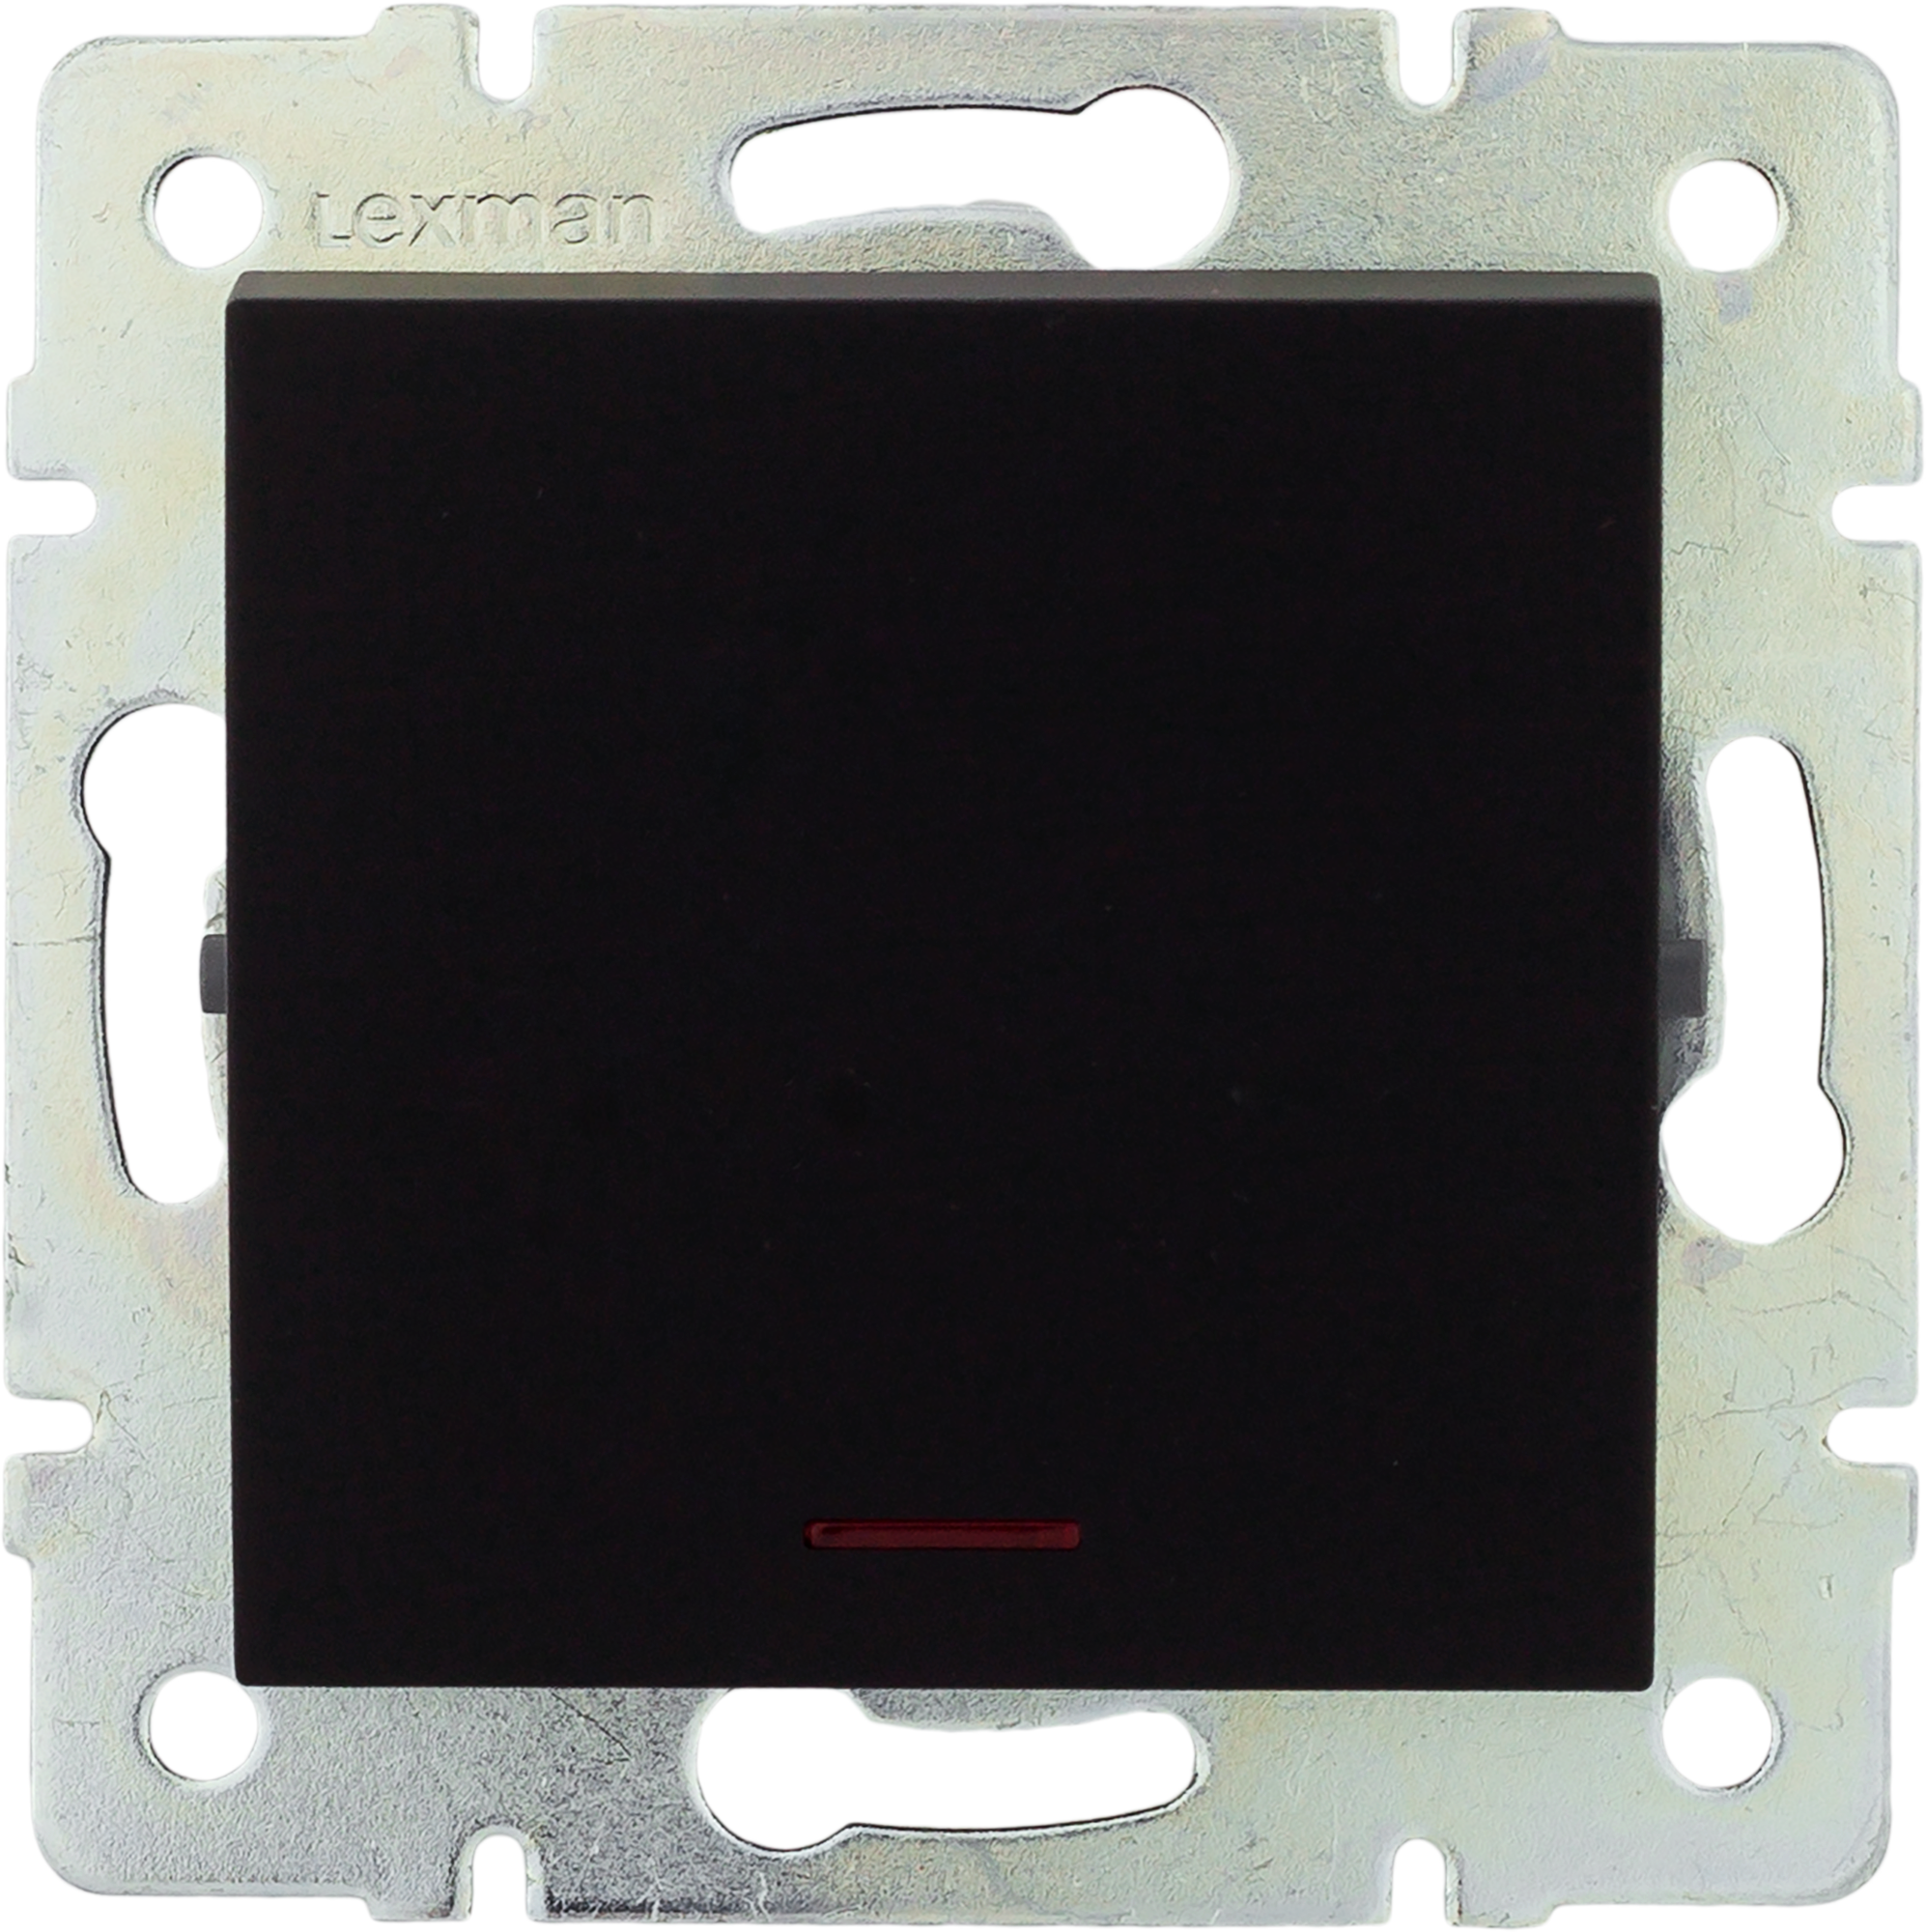 17920268 Выключатель встраиваемый 1 клавиша с подсветкой, цвет черный бархат матовый Виктория STLM-0009022 LEXMAN